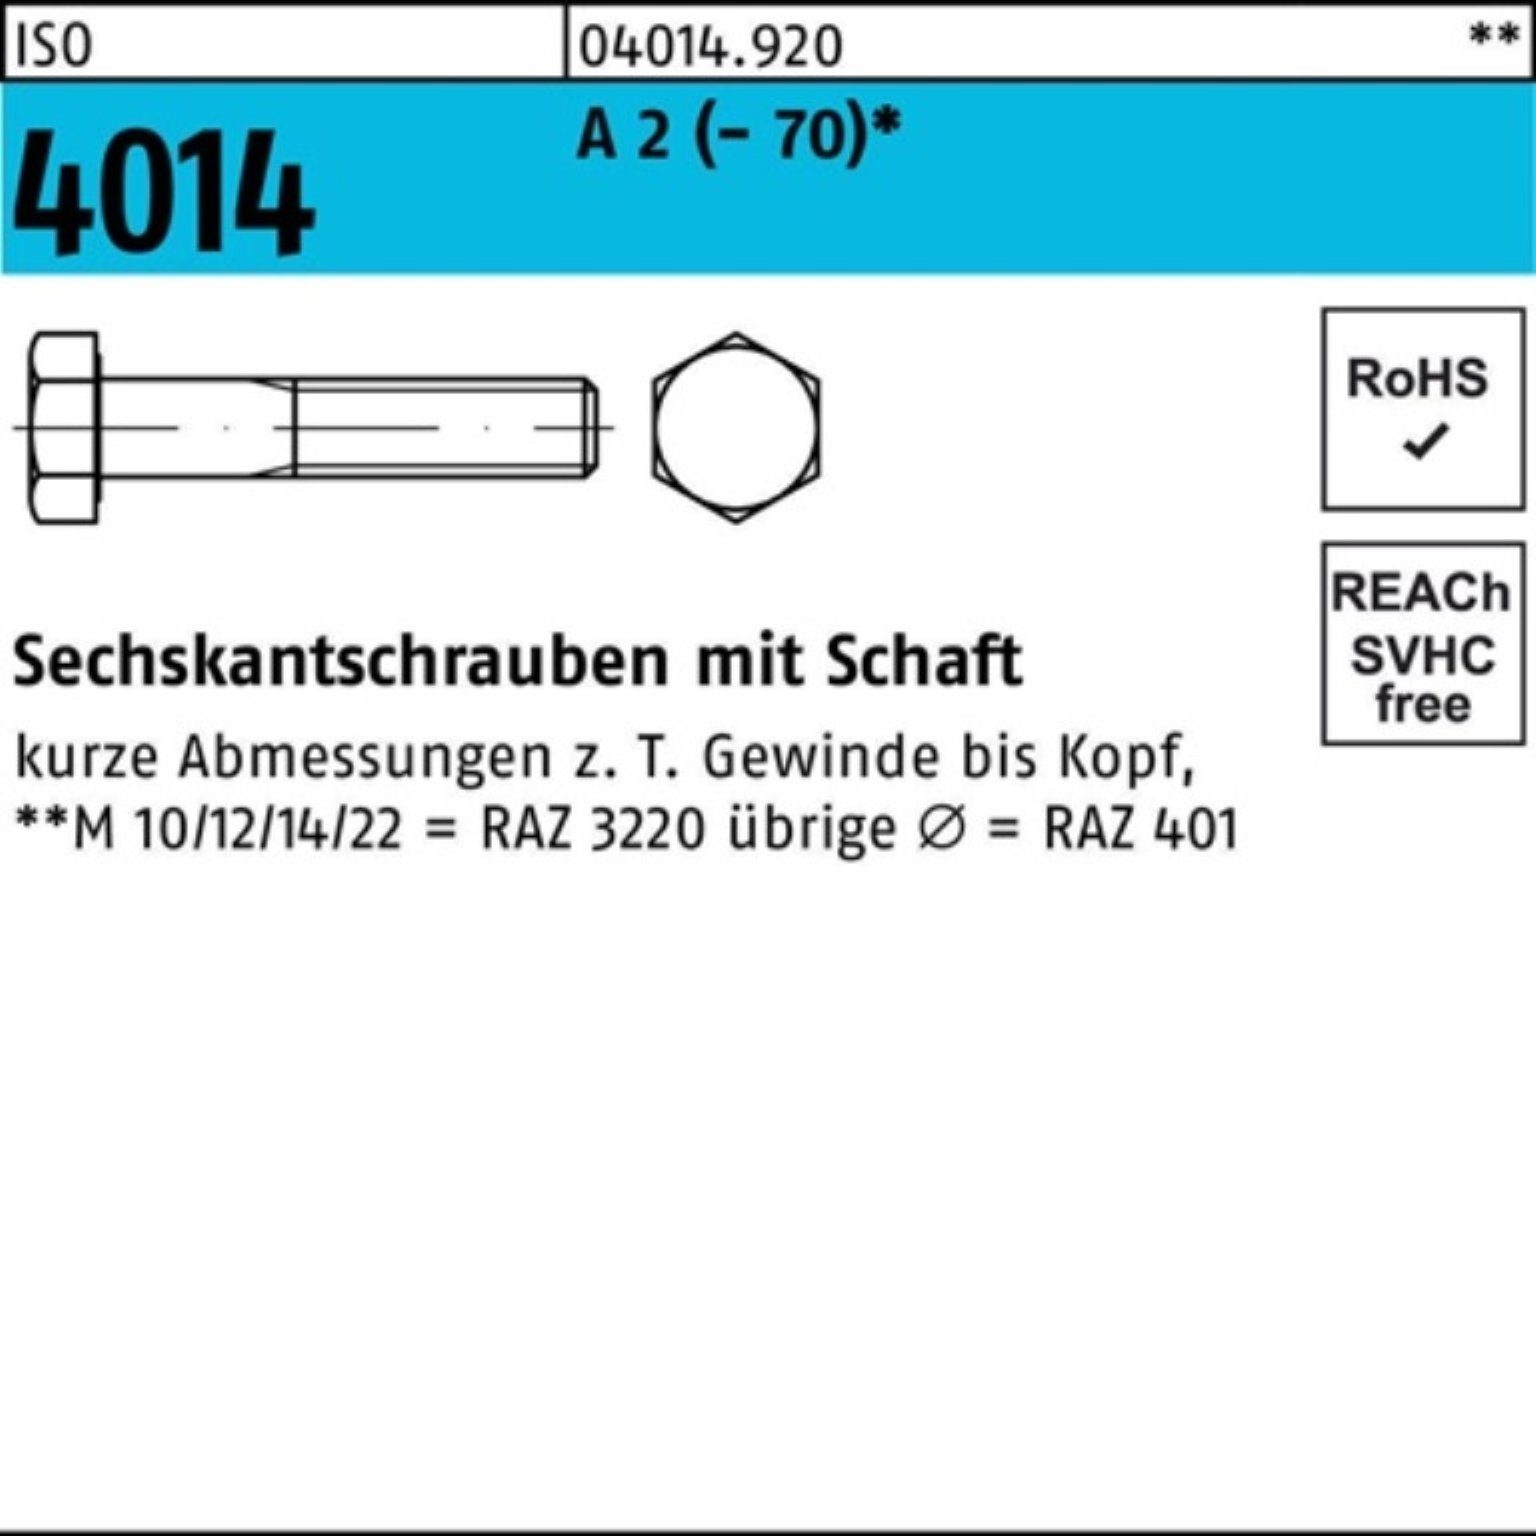 Bufab Sechskantschraube 100er Pack Sechskantschraube ISO 4014 Schaft M22x 90 A 2 (70) 10 St